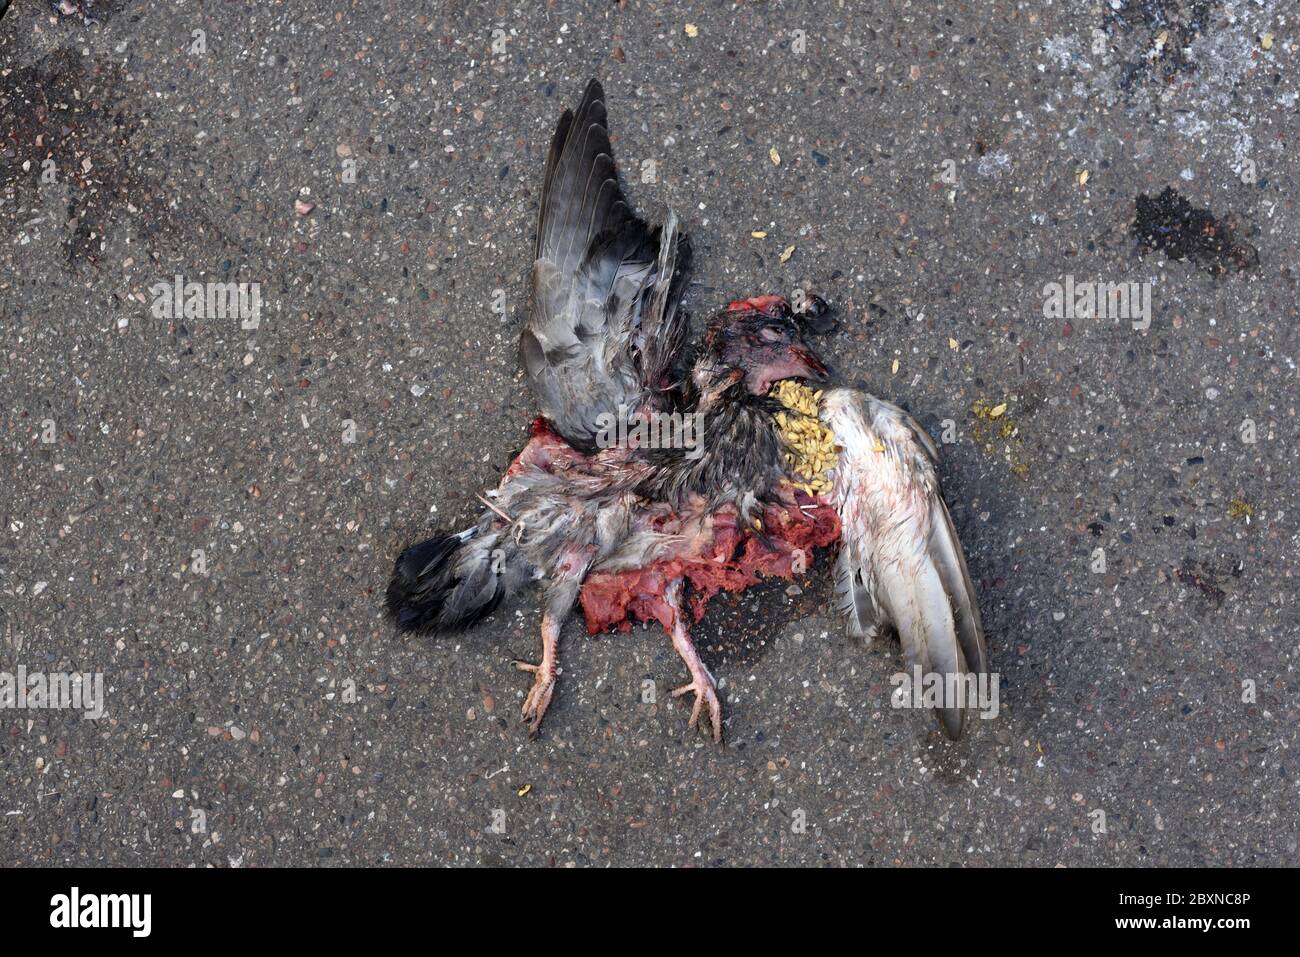 Umriss von Dead Pigeon Roadkill Birdstrike oder Bird Hit auf Bürgersteig oder Bürgersteig gequetscht Stockfoto